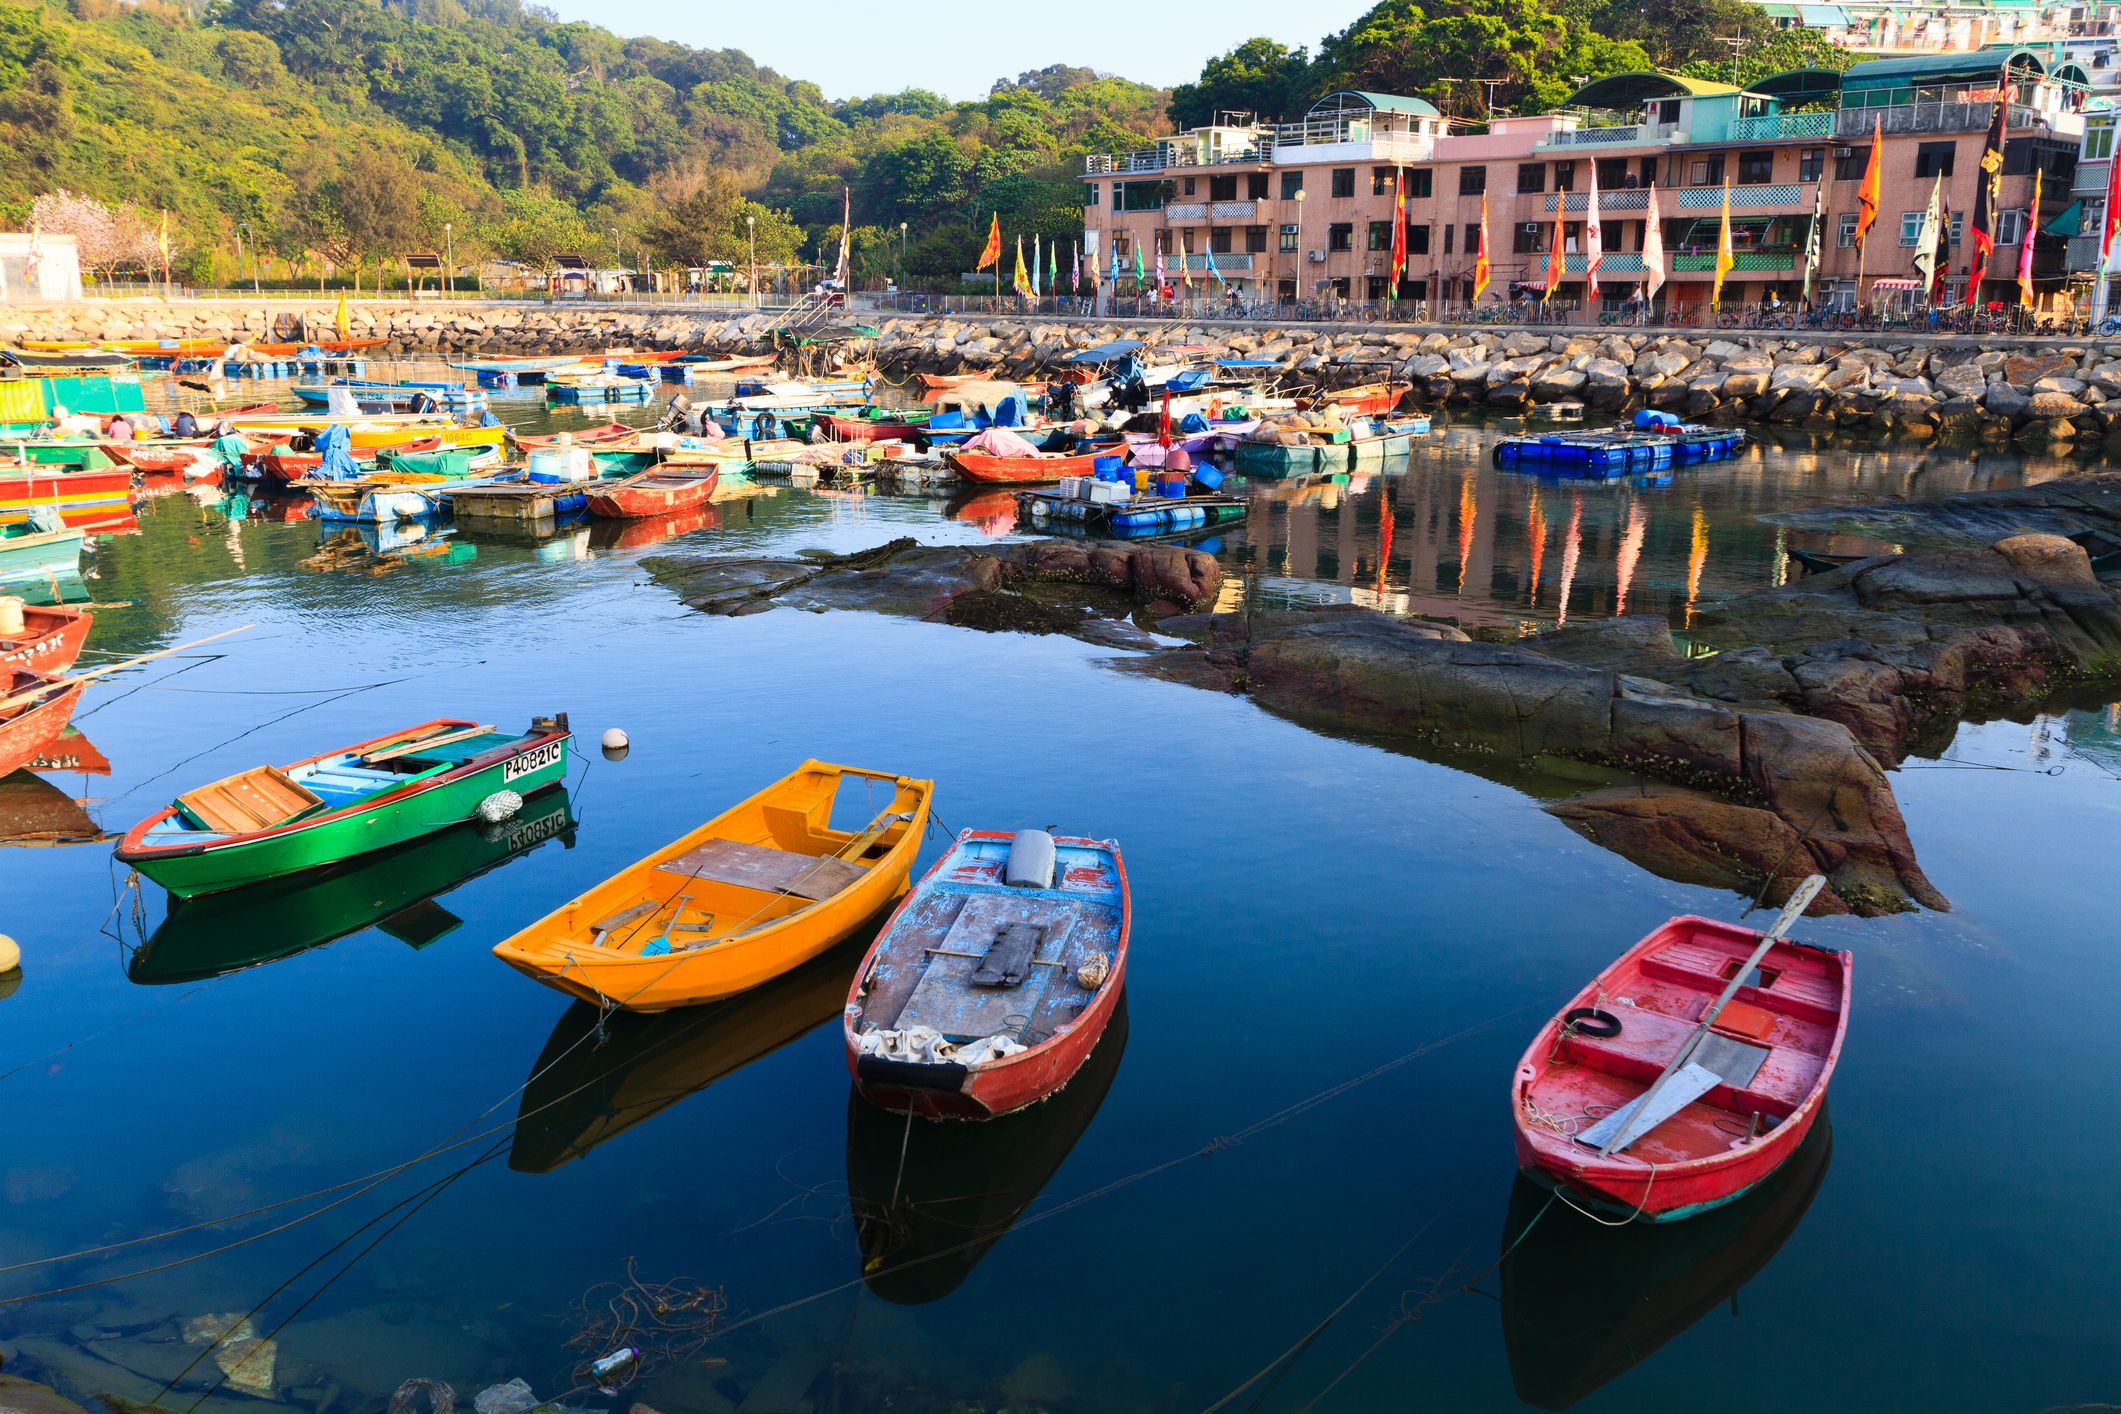 Hòn đảo Cheung Chau hấp dẫn khách du lịch Hồng Kông mùa hè với lễ hội Bun hằng năm,